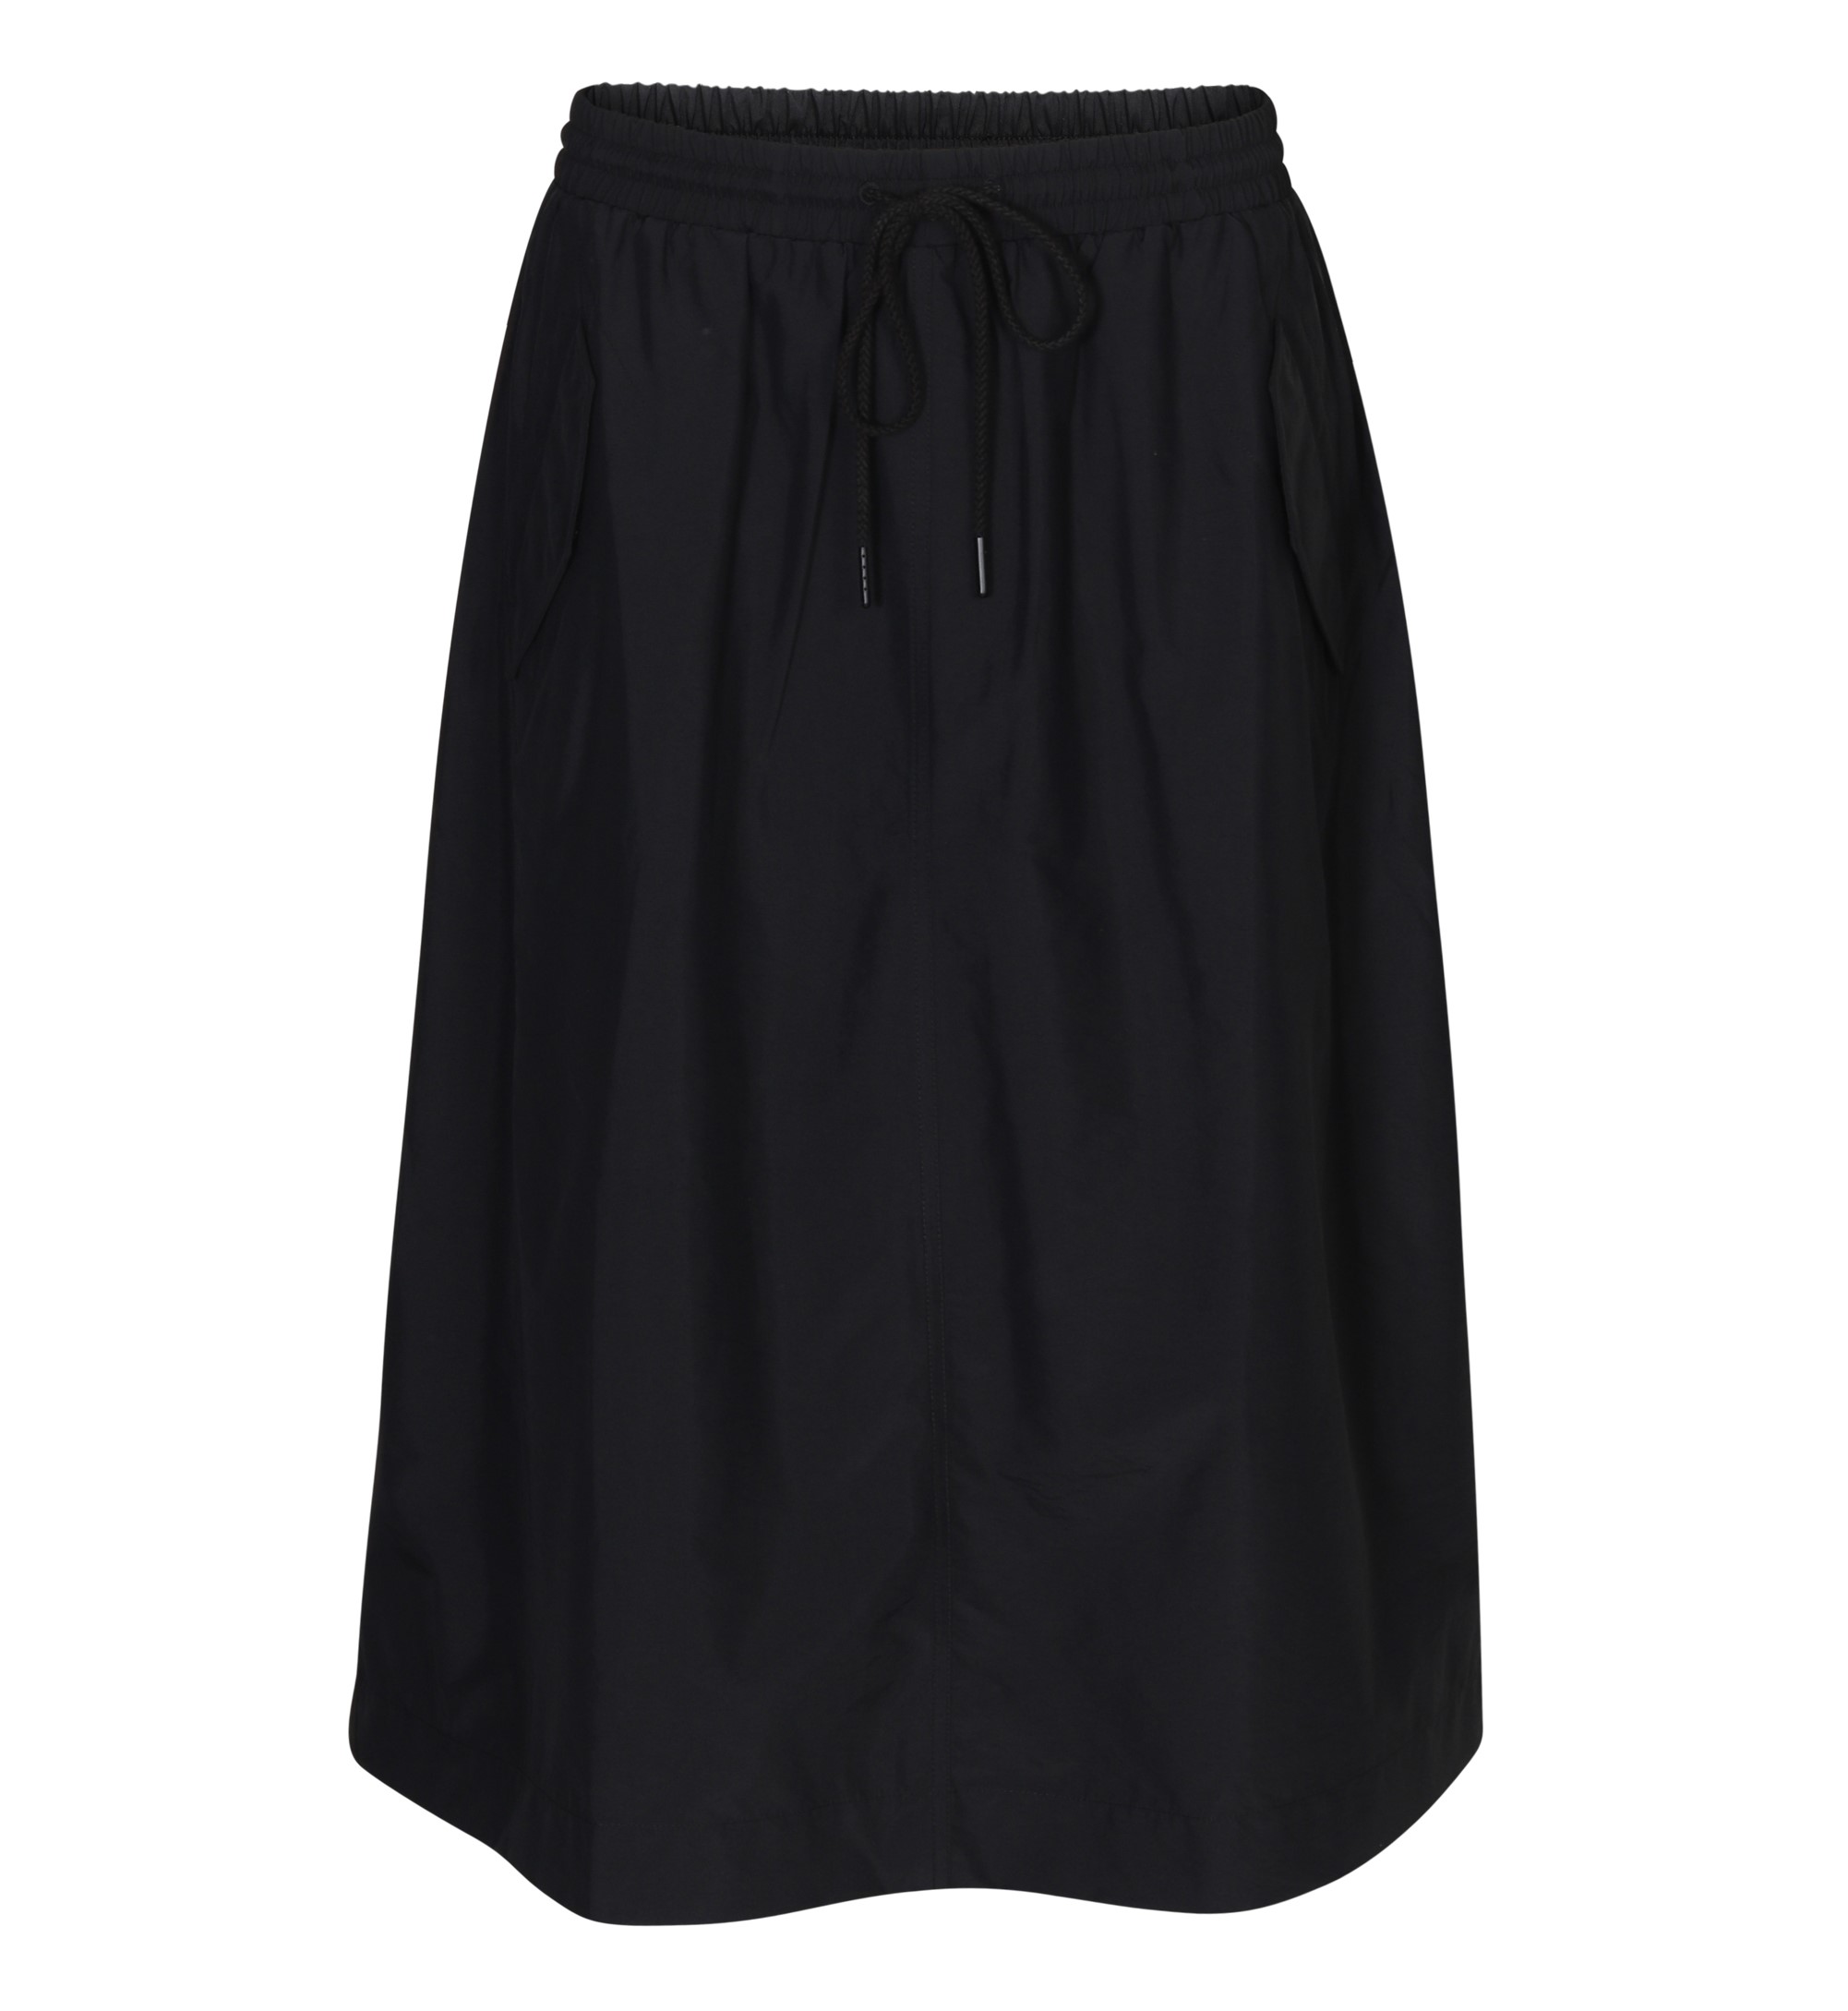 6397 Nylon Skirt in Black